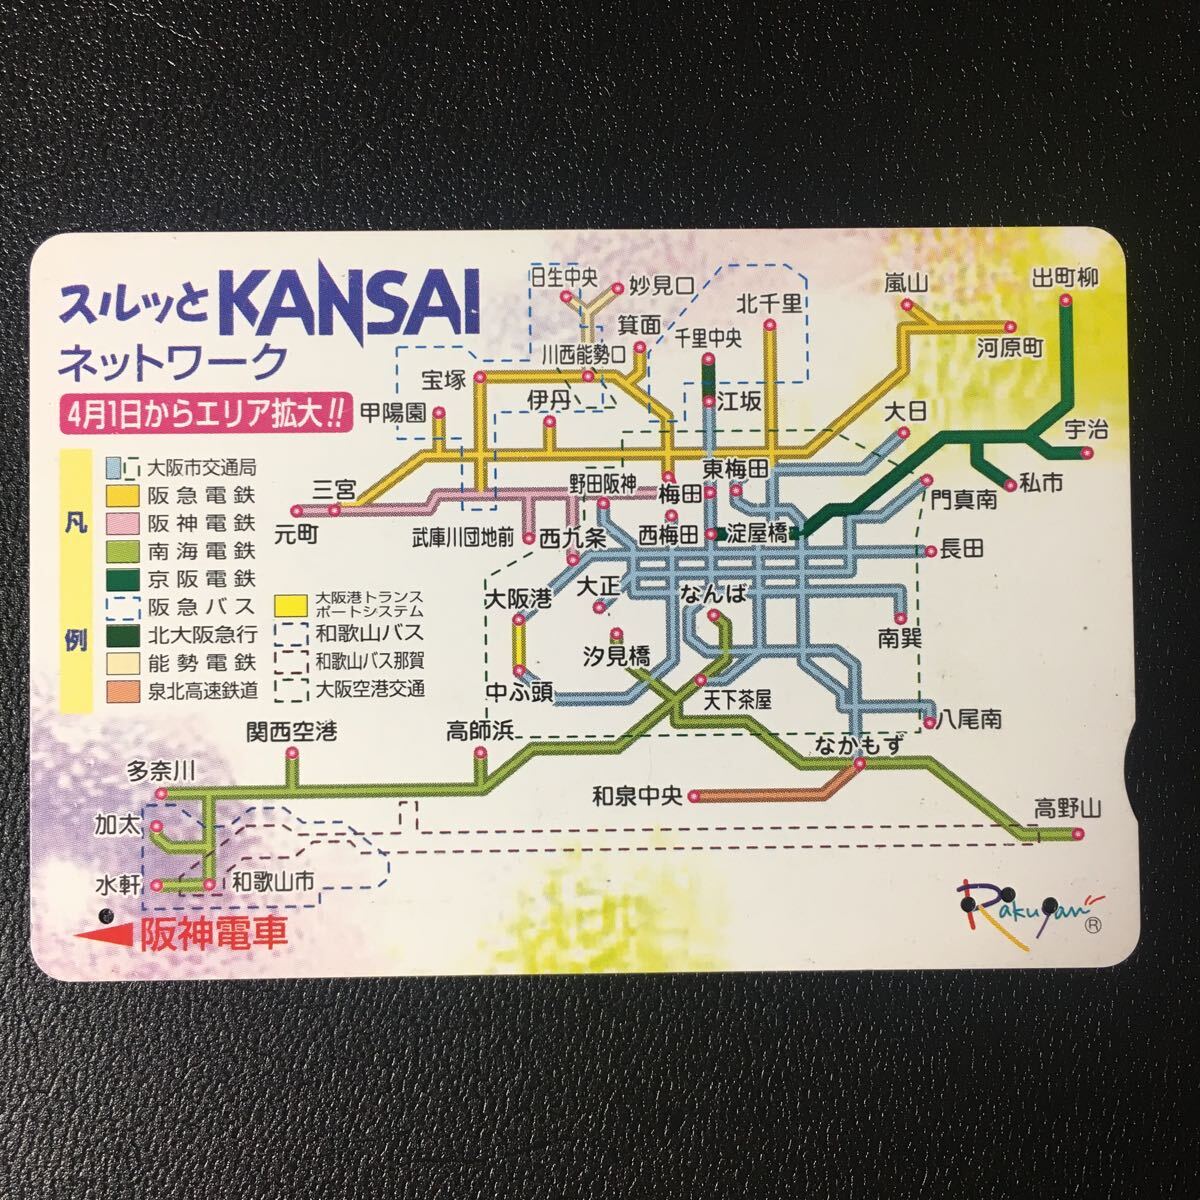 阪神/記念カード「スルッとKANSAIネットワーク(1999.04.01エリア拡大)」ーらくやんカード(使用済/スルッとKANSAI)_画像1